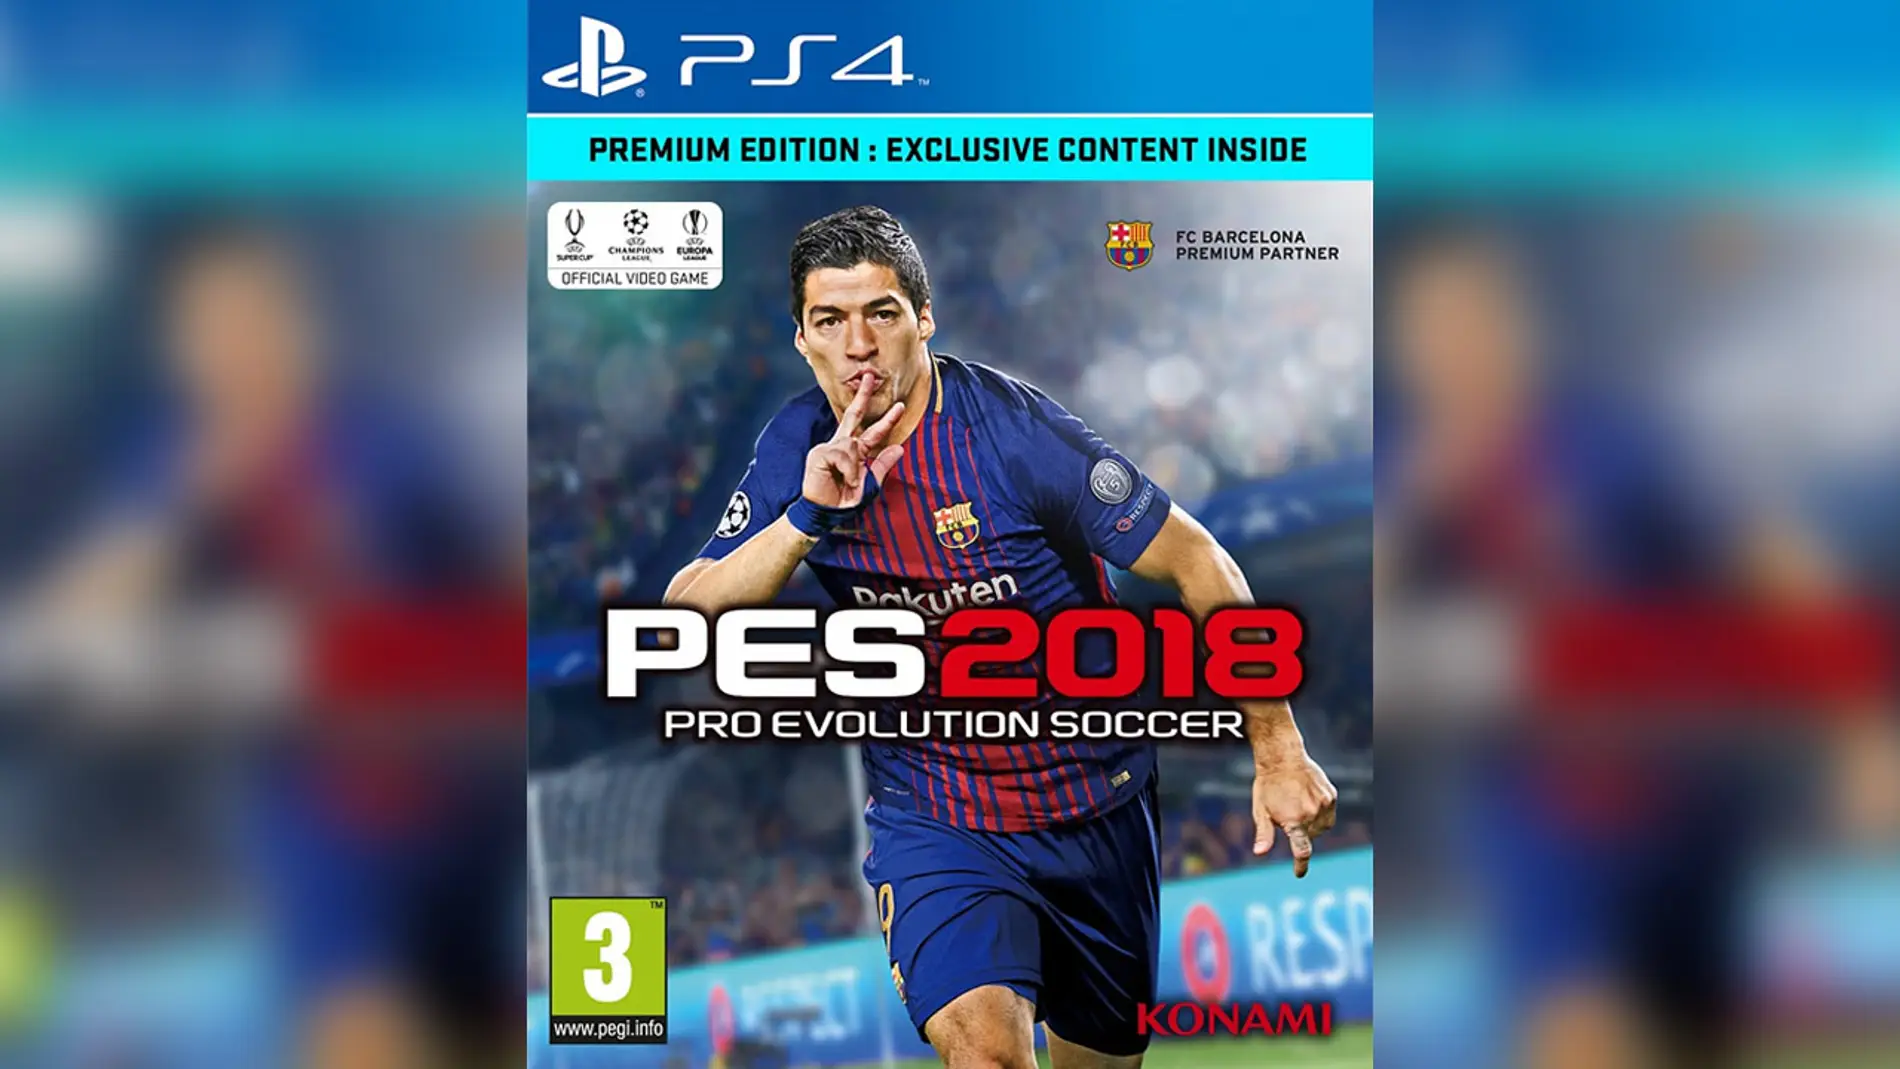 Luis Suarez en portada de PES 2018